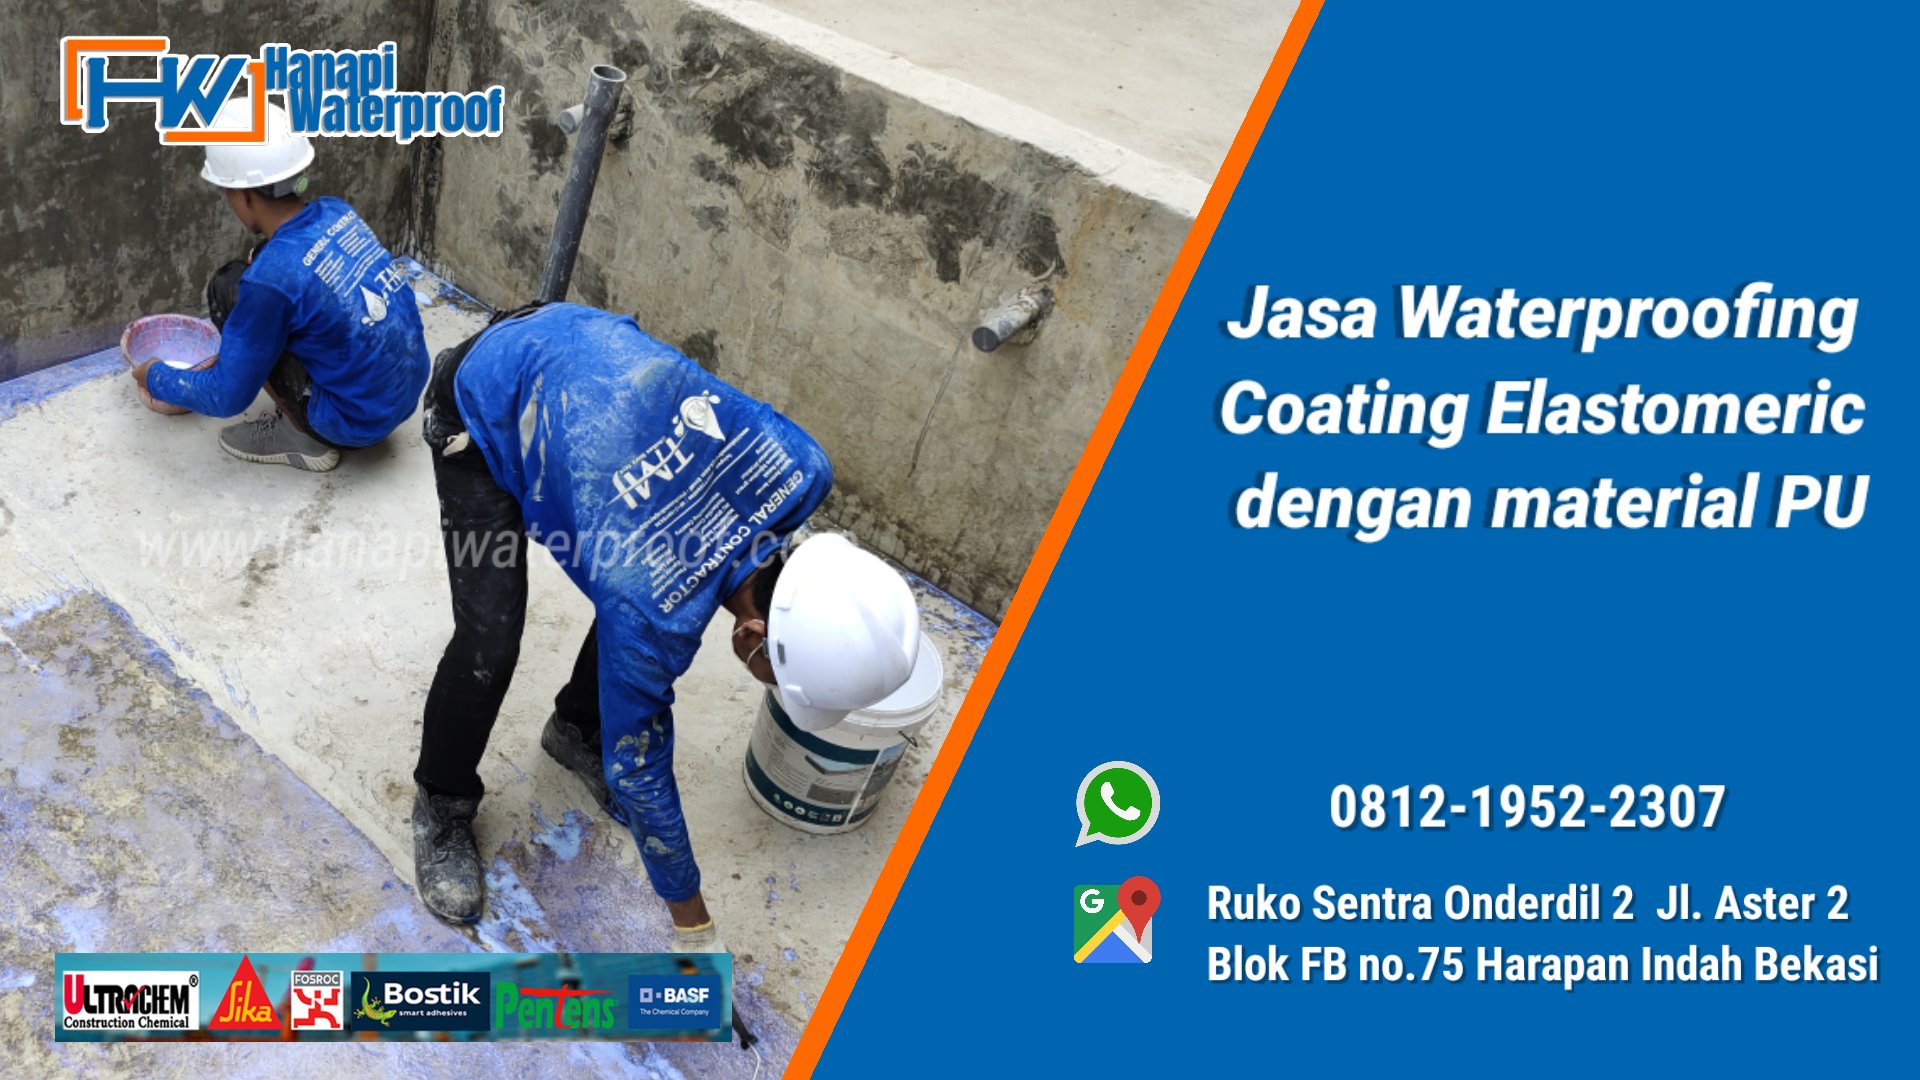 Waterproofing Coating